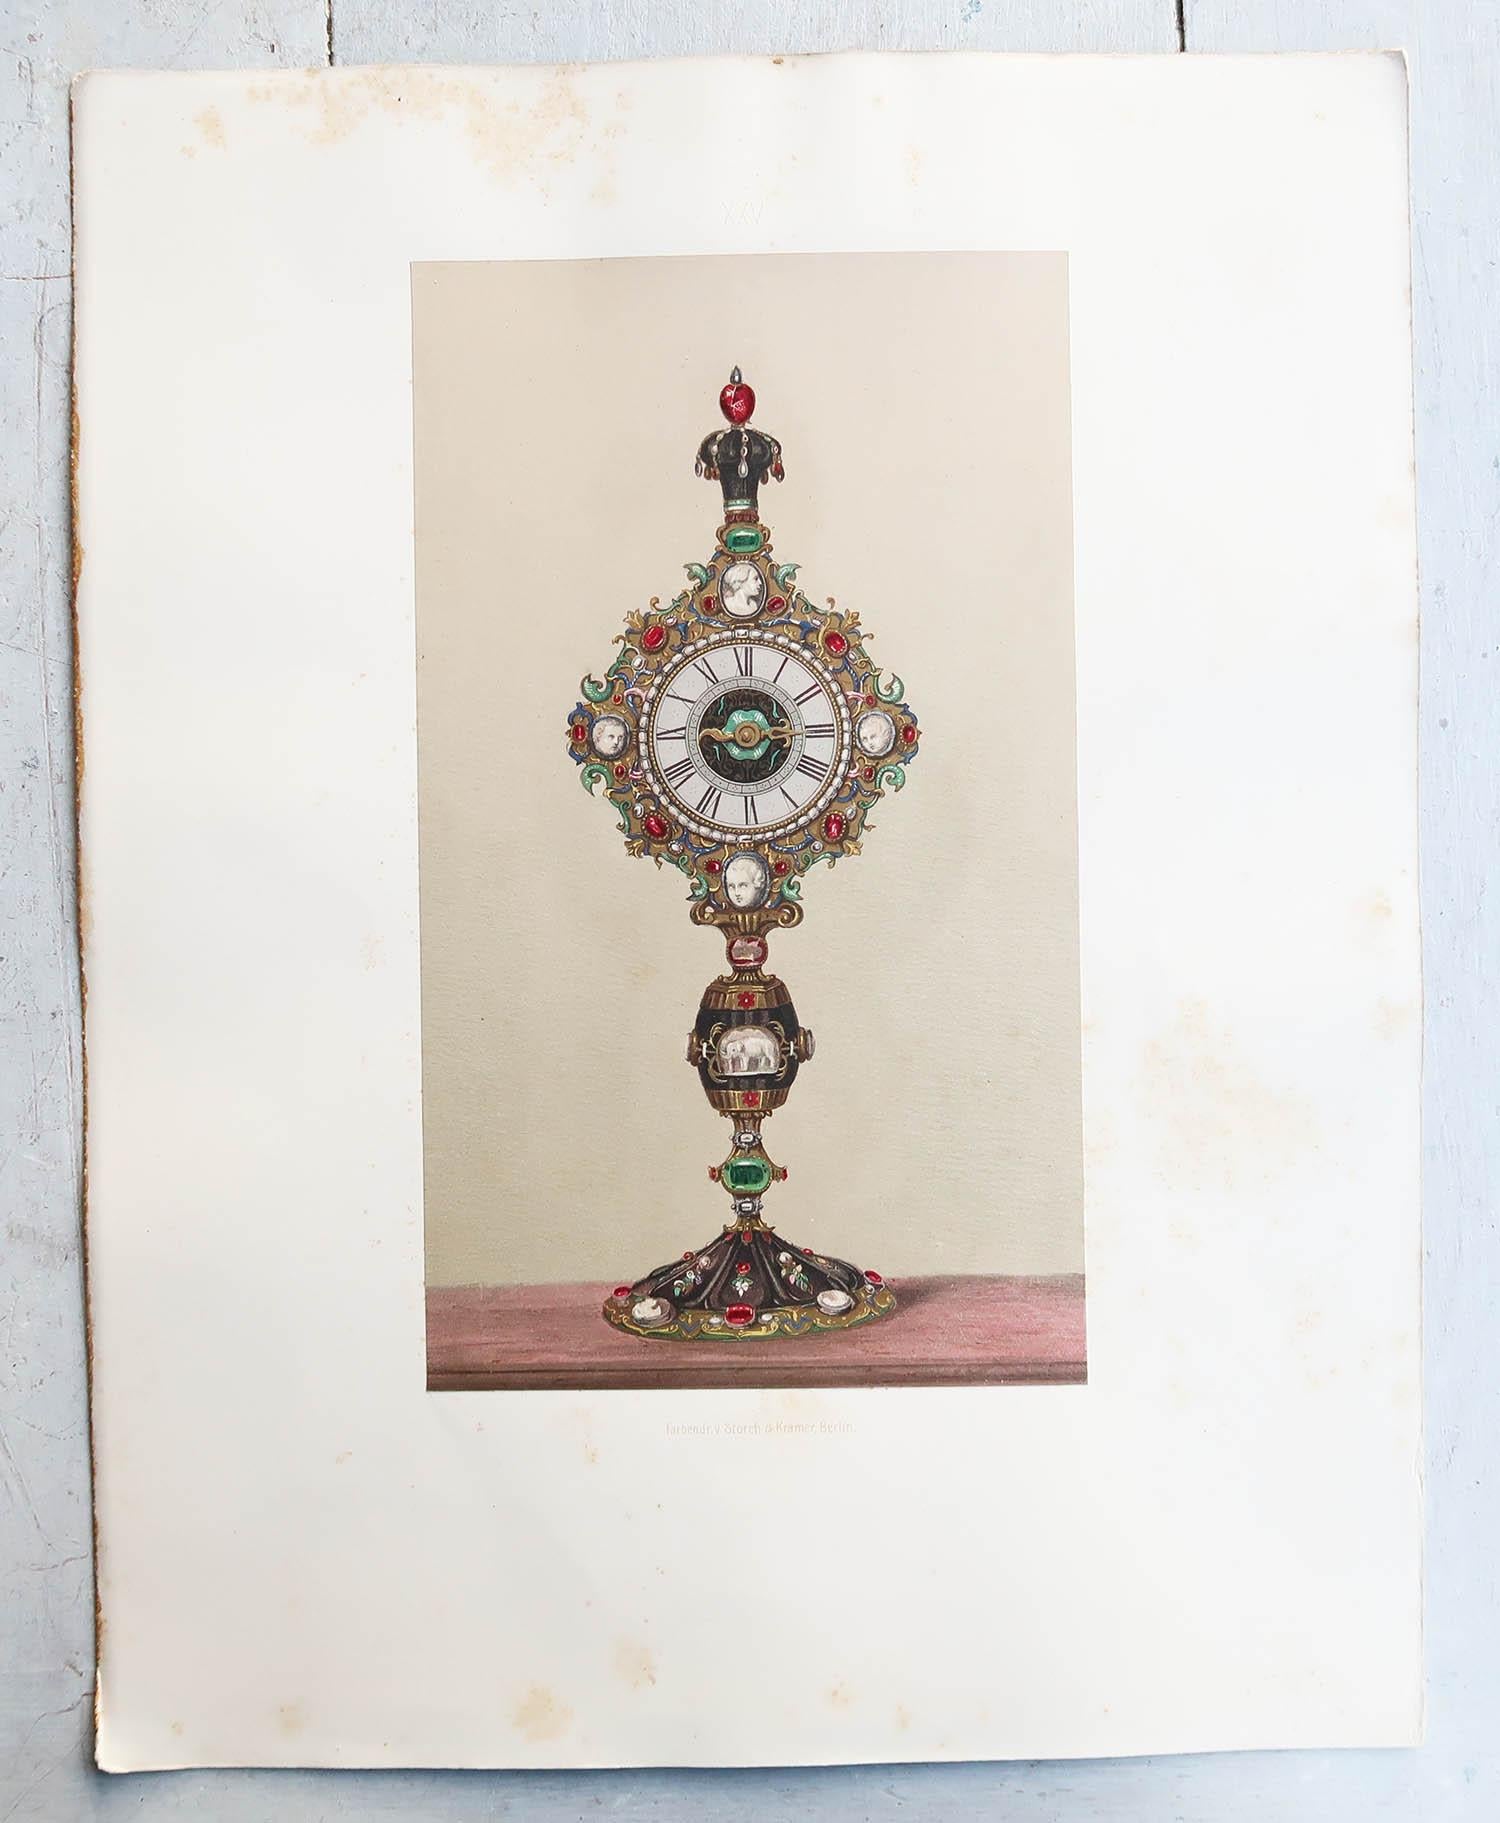 Superbe série de 5 tirages de Trésors de l'art européen

Chromolithographies

Publié par Louis Gruner, 1862.

Les tirages sont en bon état. Les montures blanches présentent des problèmes d'état. Ceci est visible sur les images

La mesure indiquée